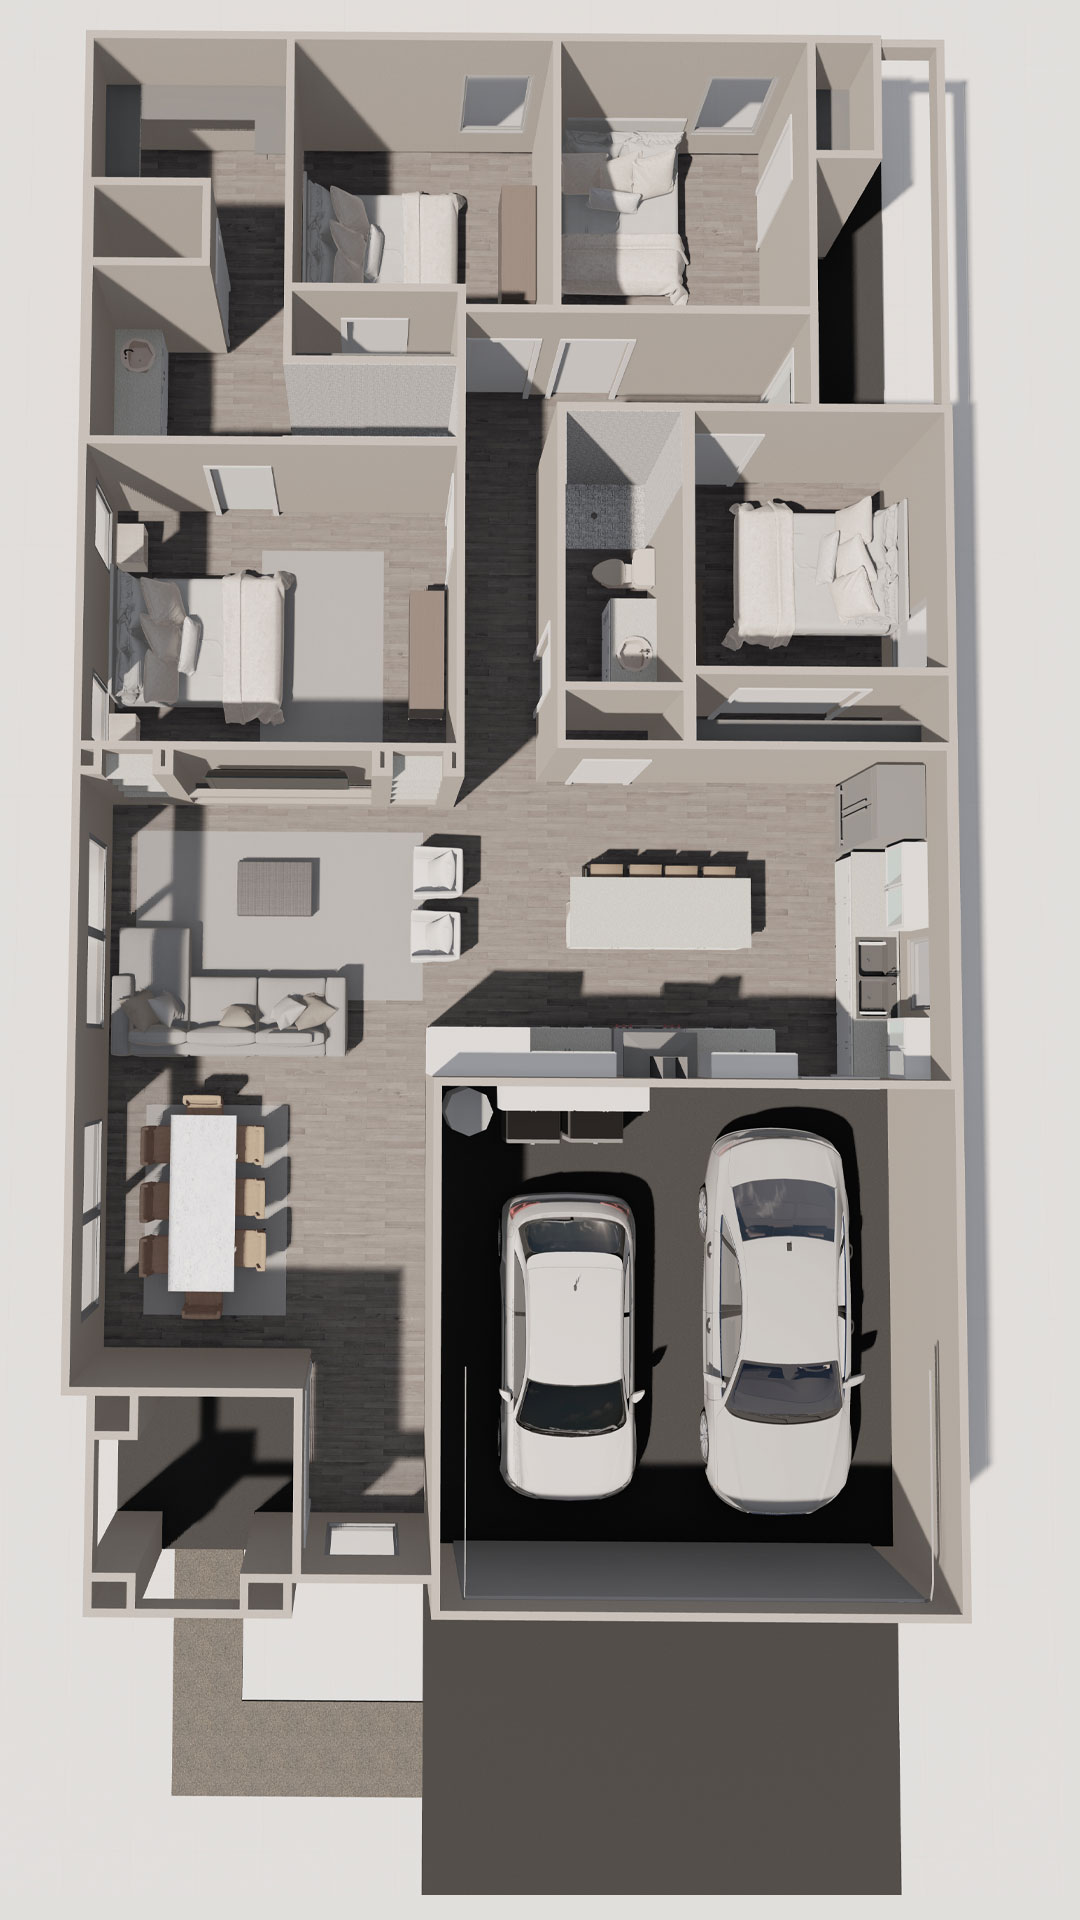 Leon House Model Floor Plan Option 1